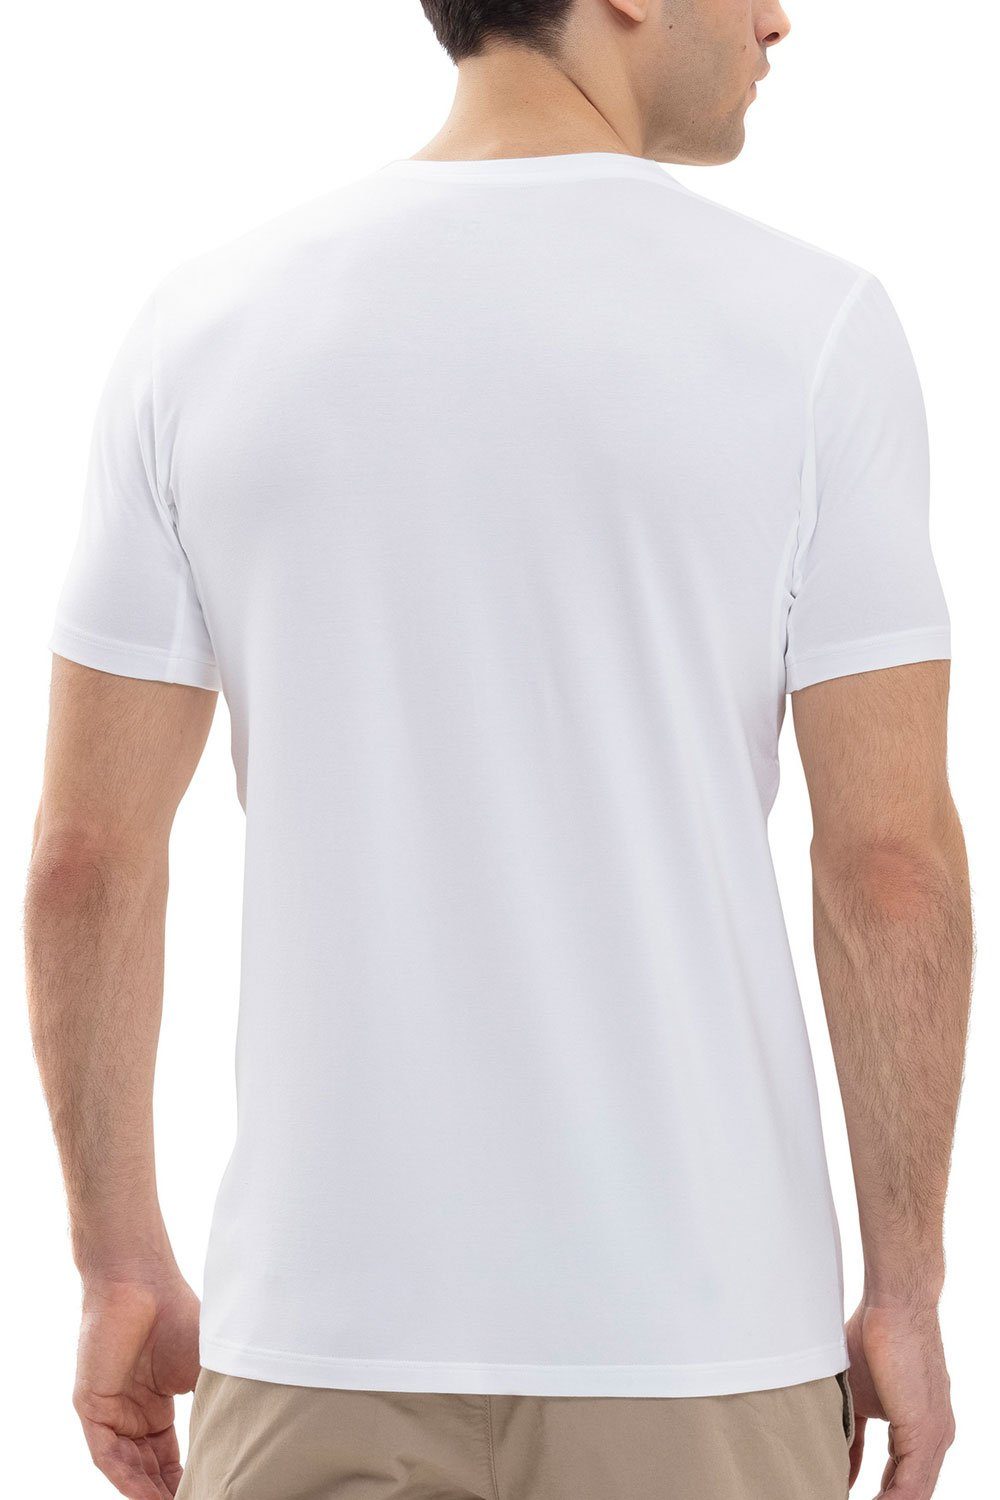 iQ-T 30037 T-Shirt Mey Kurzarmshirt weiß